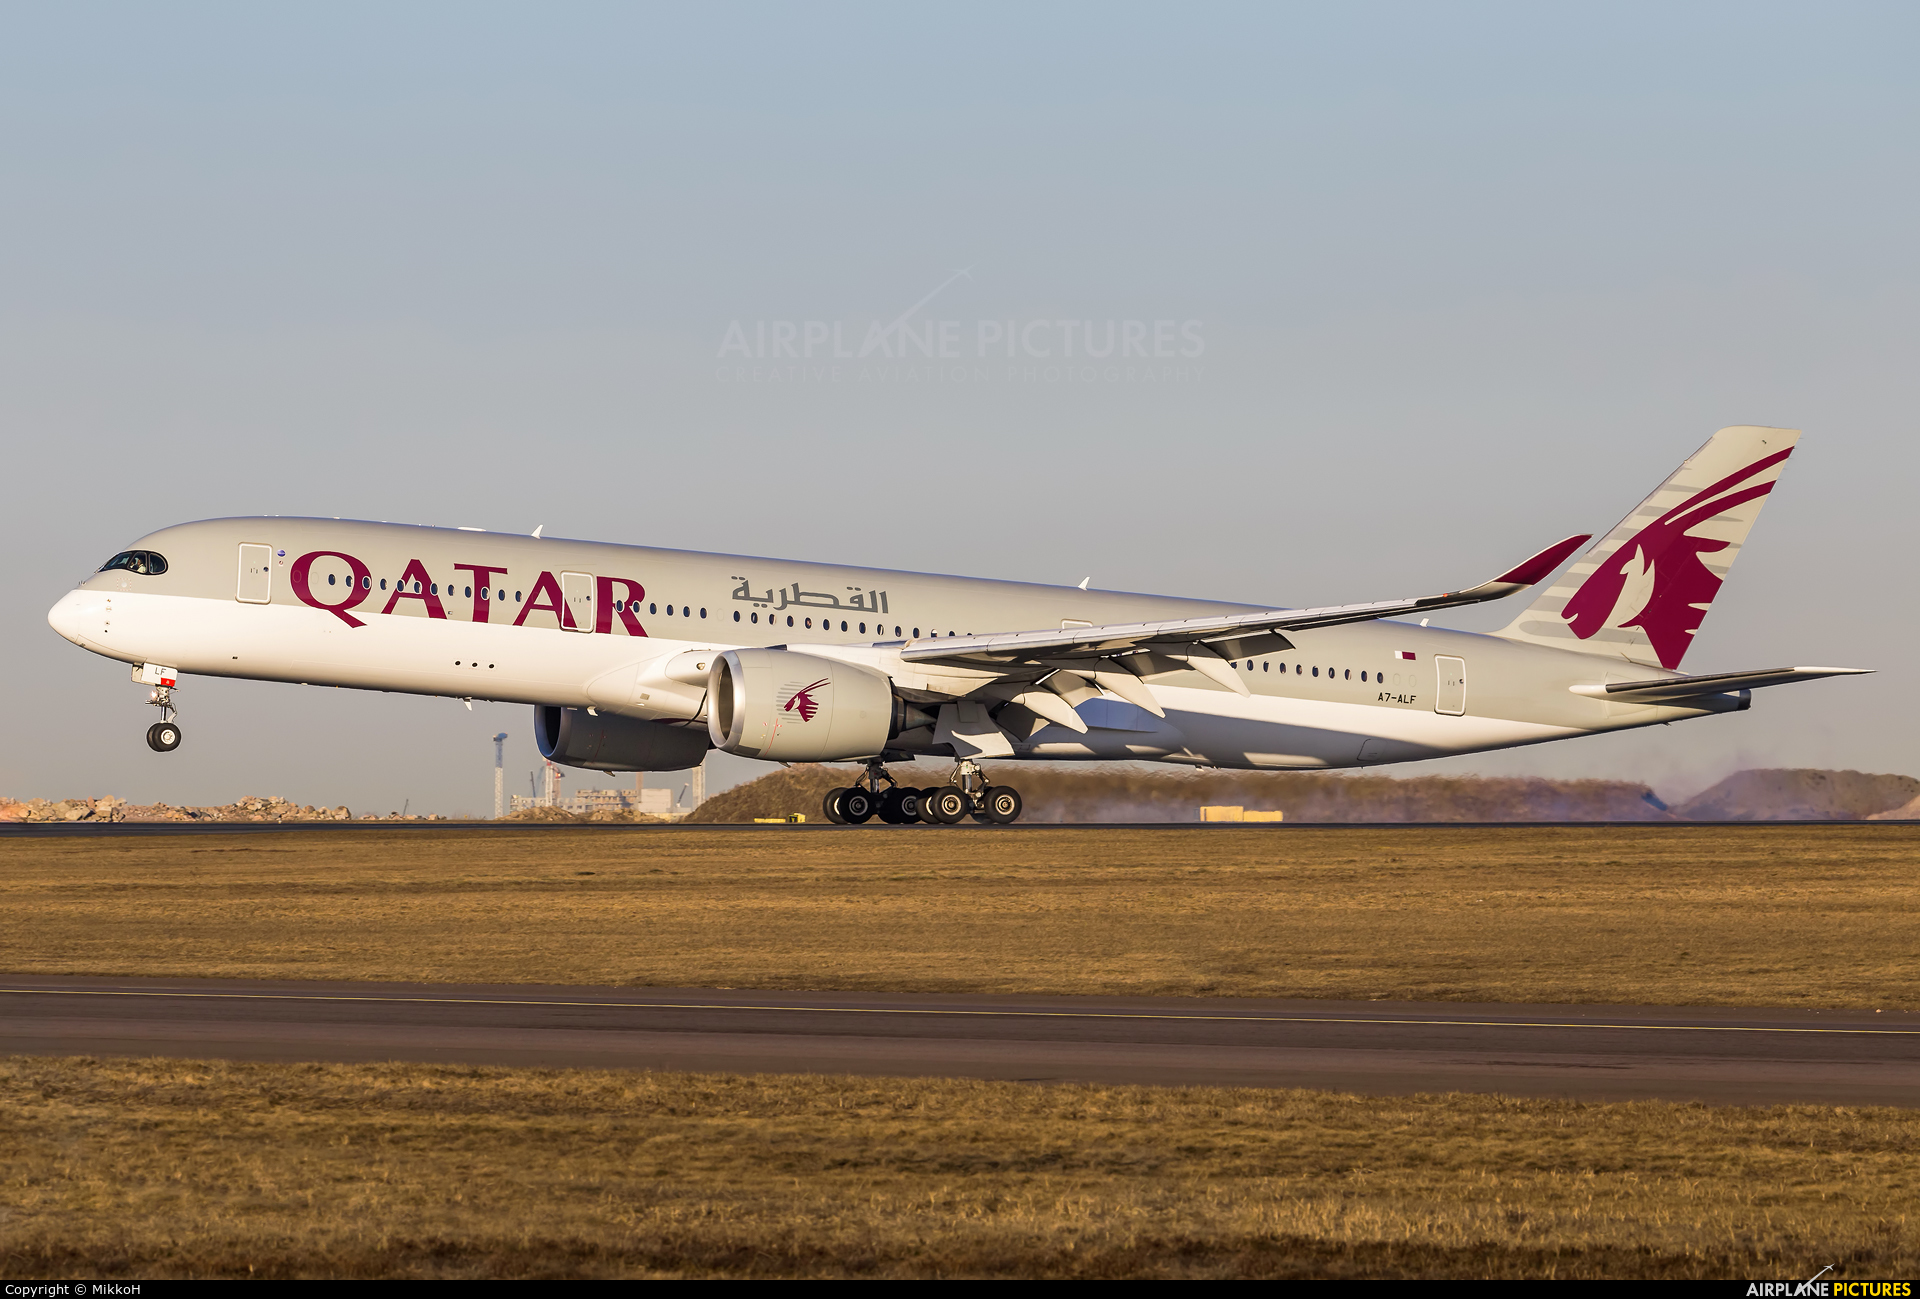 Qatar Airways A7-alf Aircraft At Helsinki - Qatar Airways A350 - 1920x1299  Wallpaper 